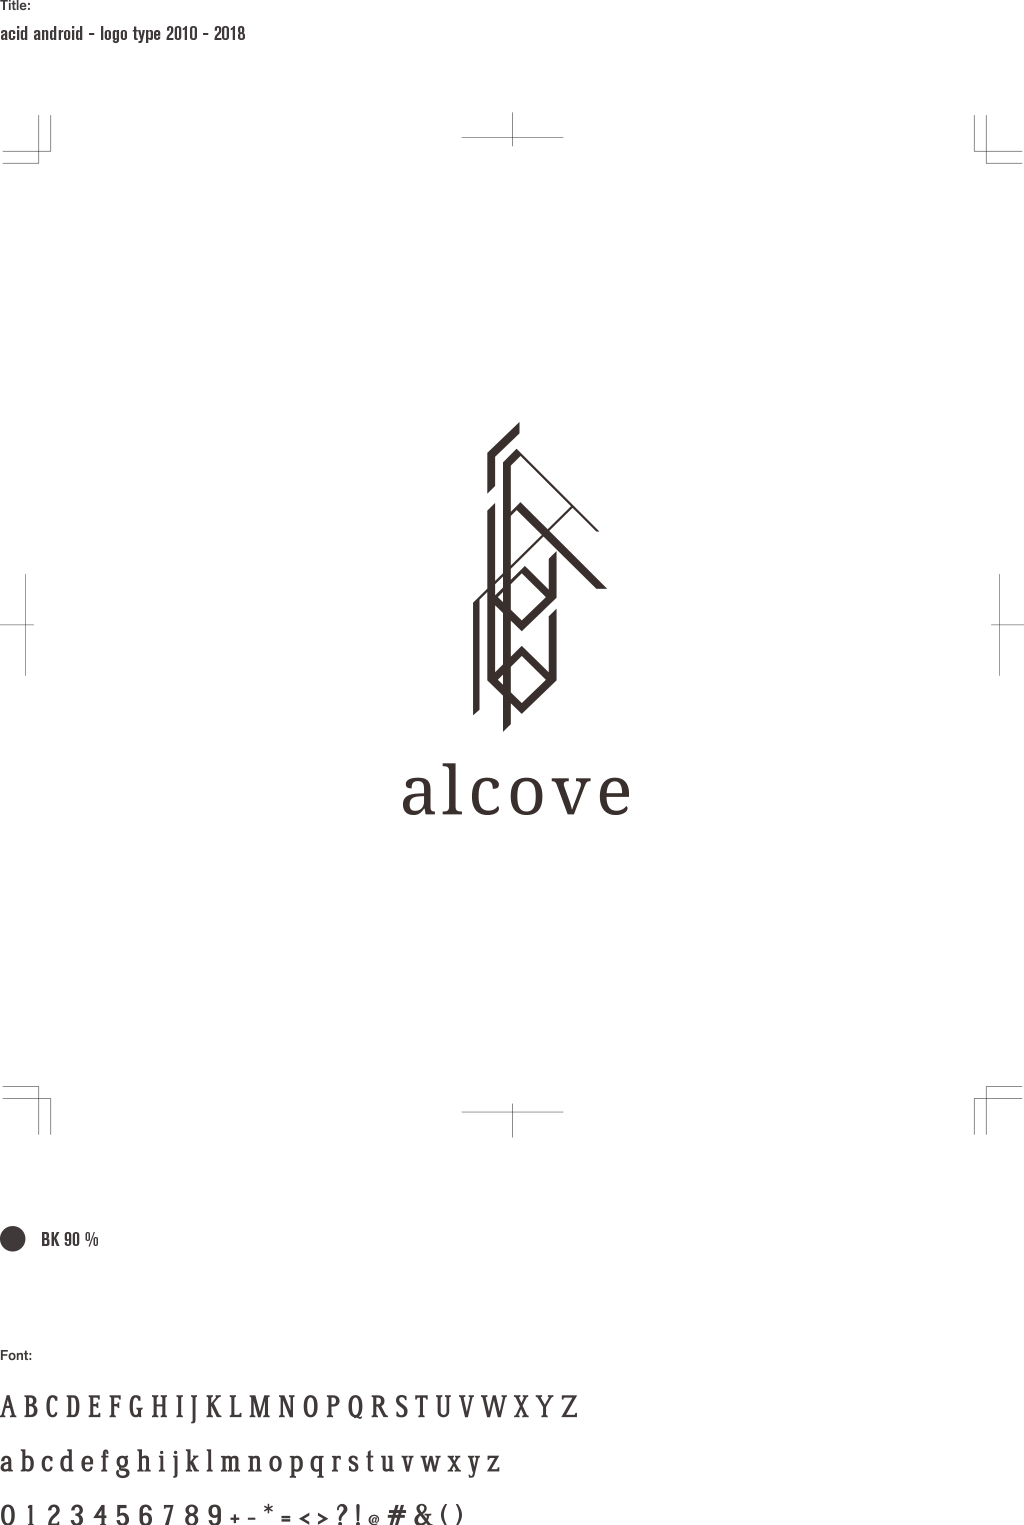 alcove - logo type 2010-2018